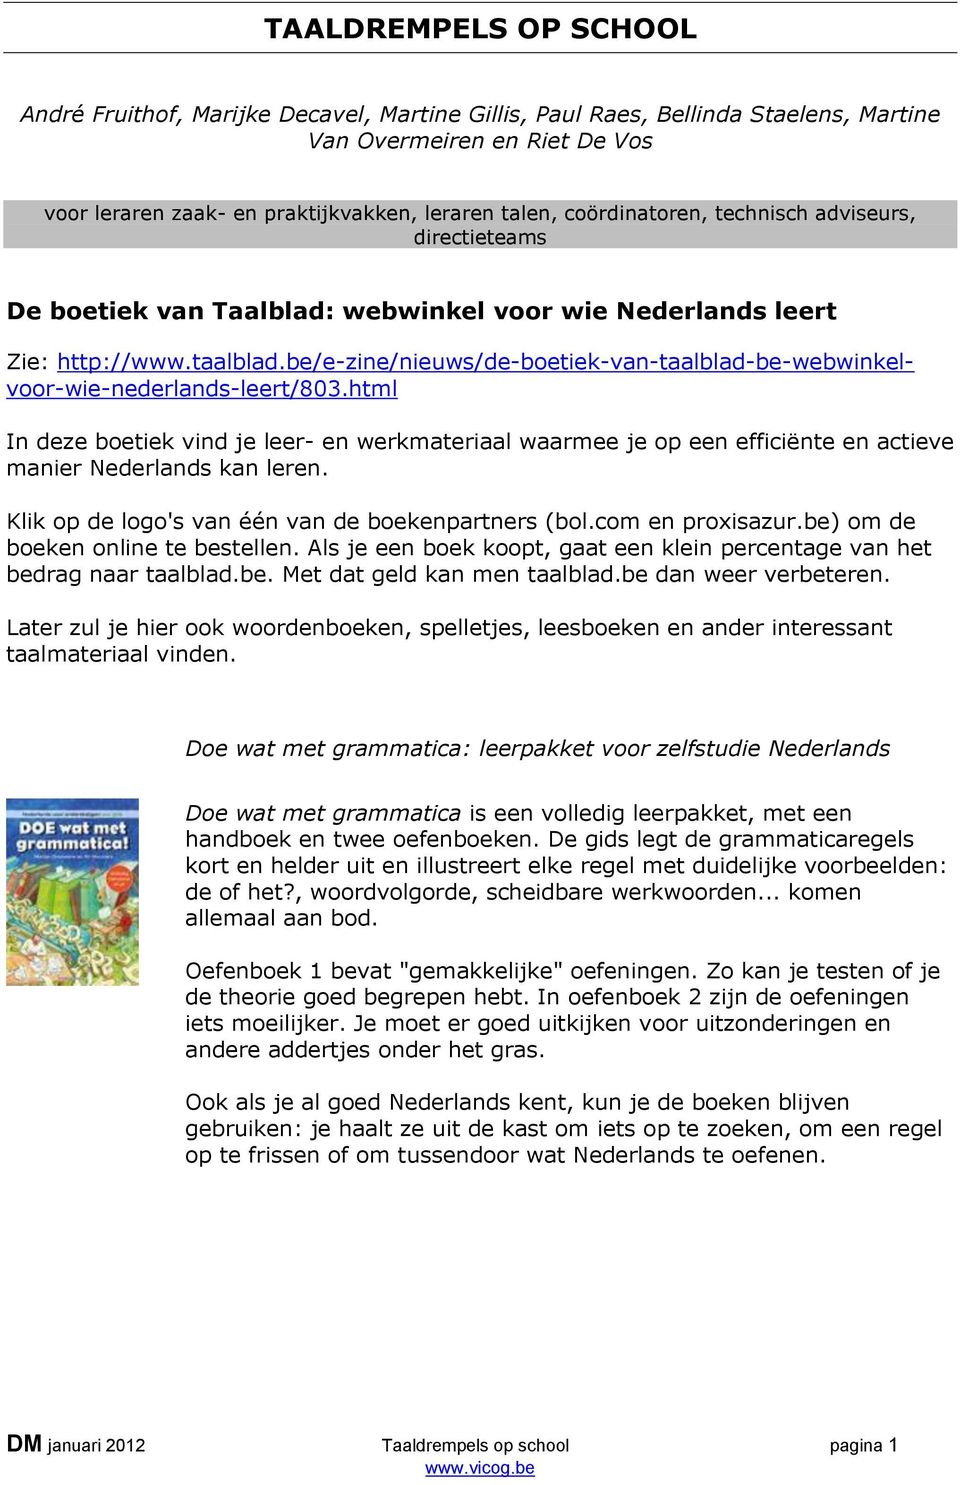 be/e-zine/nieuws/de-boetiek-van-taalblad-be-webwinkelvoor-wie-nederlands-leert/803.